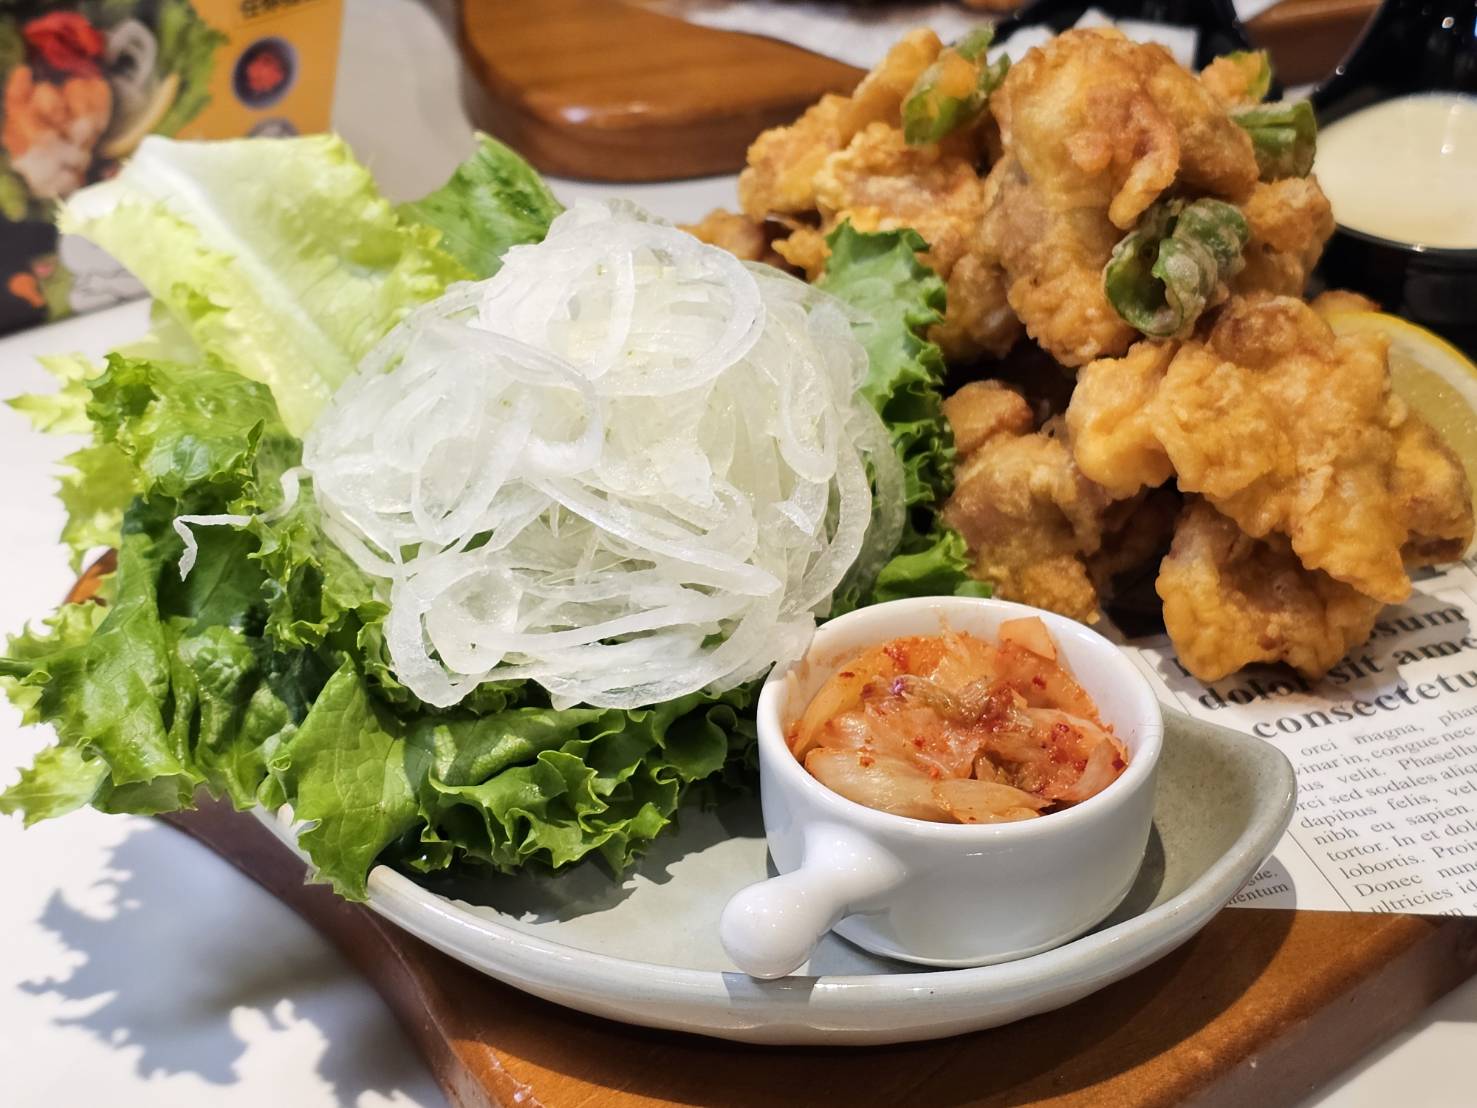 「柠香玛呦炸鸡」提供有生菜、洋葱、泡菜等佐料。记者陈睿中／摄影